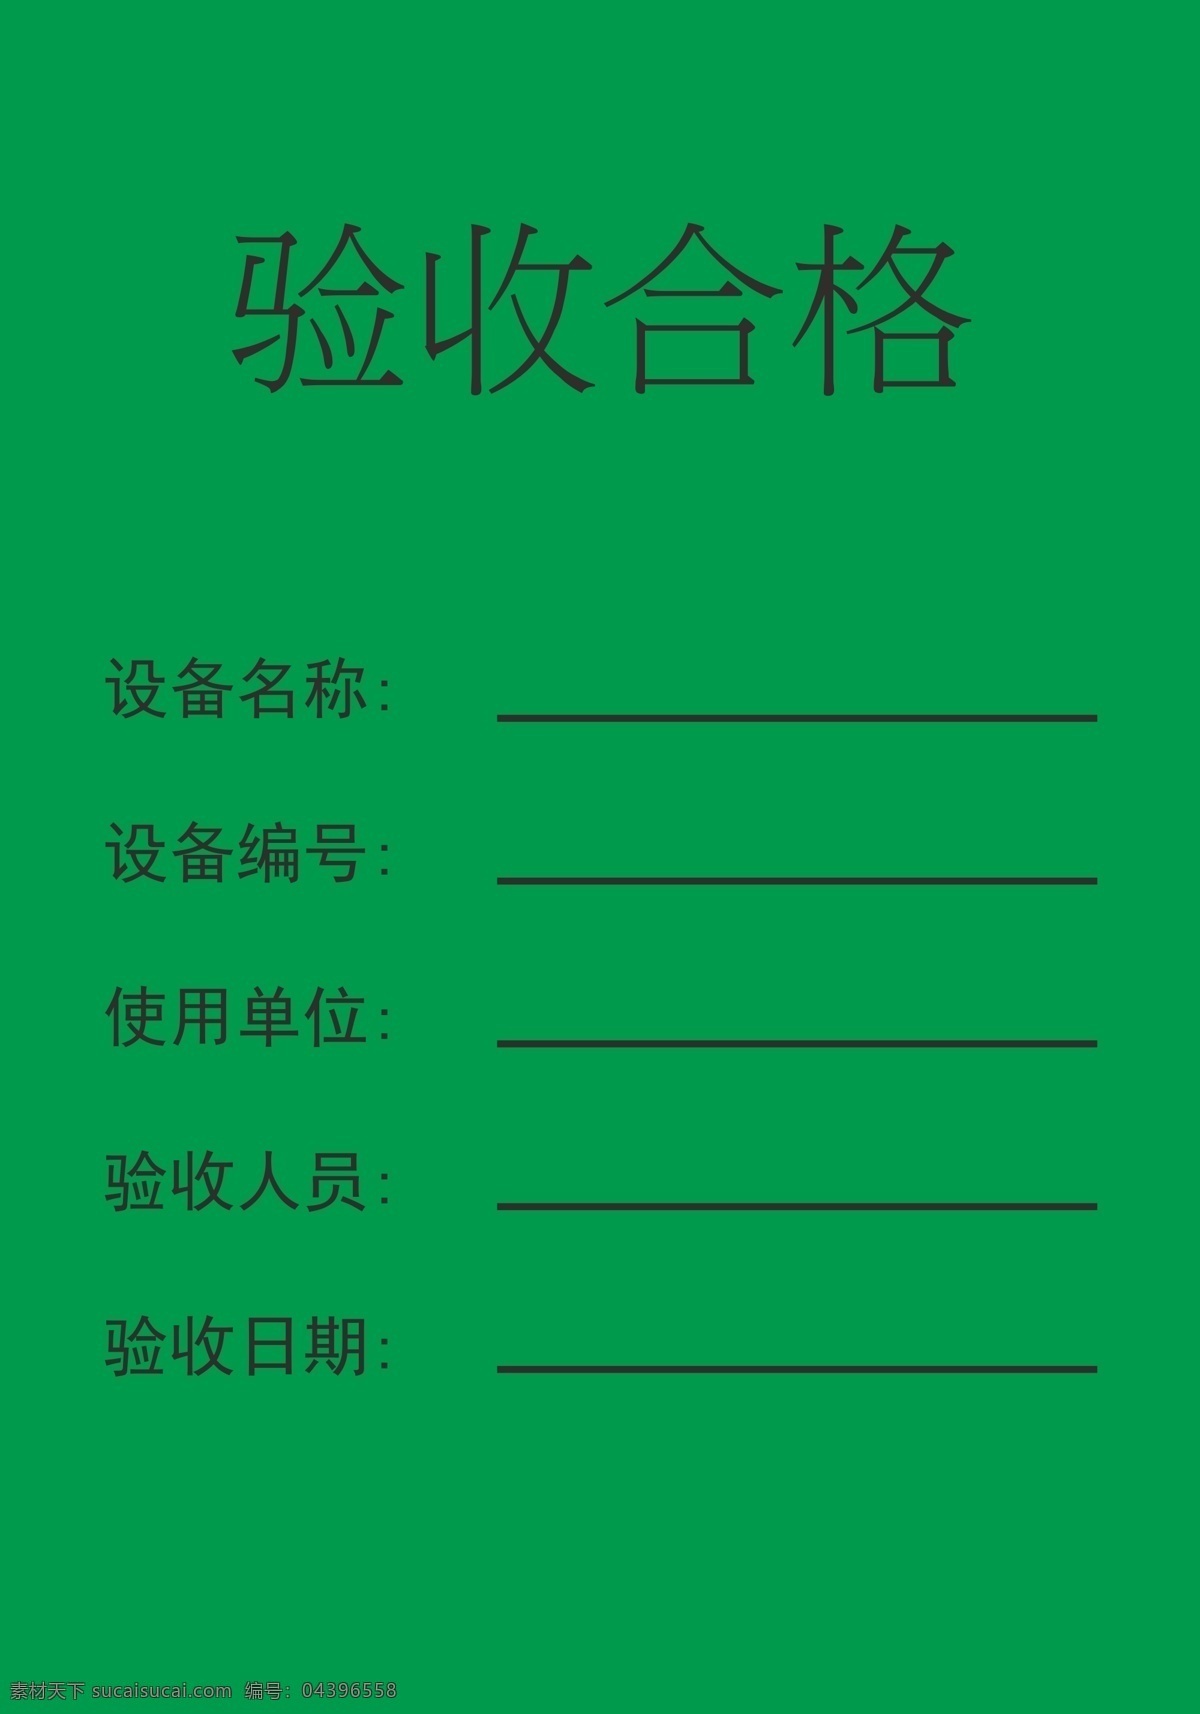 验收合格标签 施工工地标签 验收合格 中建八局 中国建筑 第八工程局 红黄蓝绿 标签 已验收